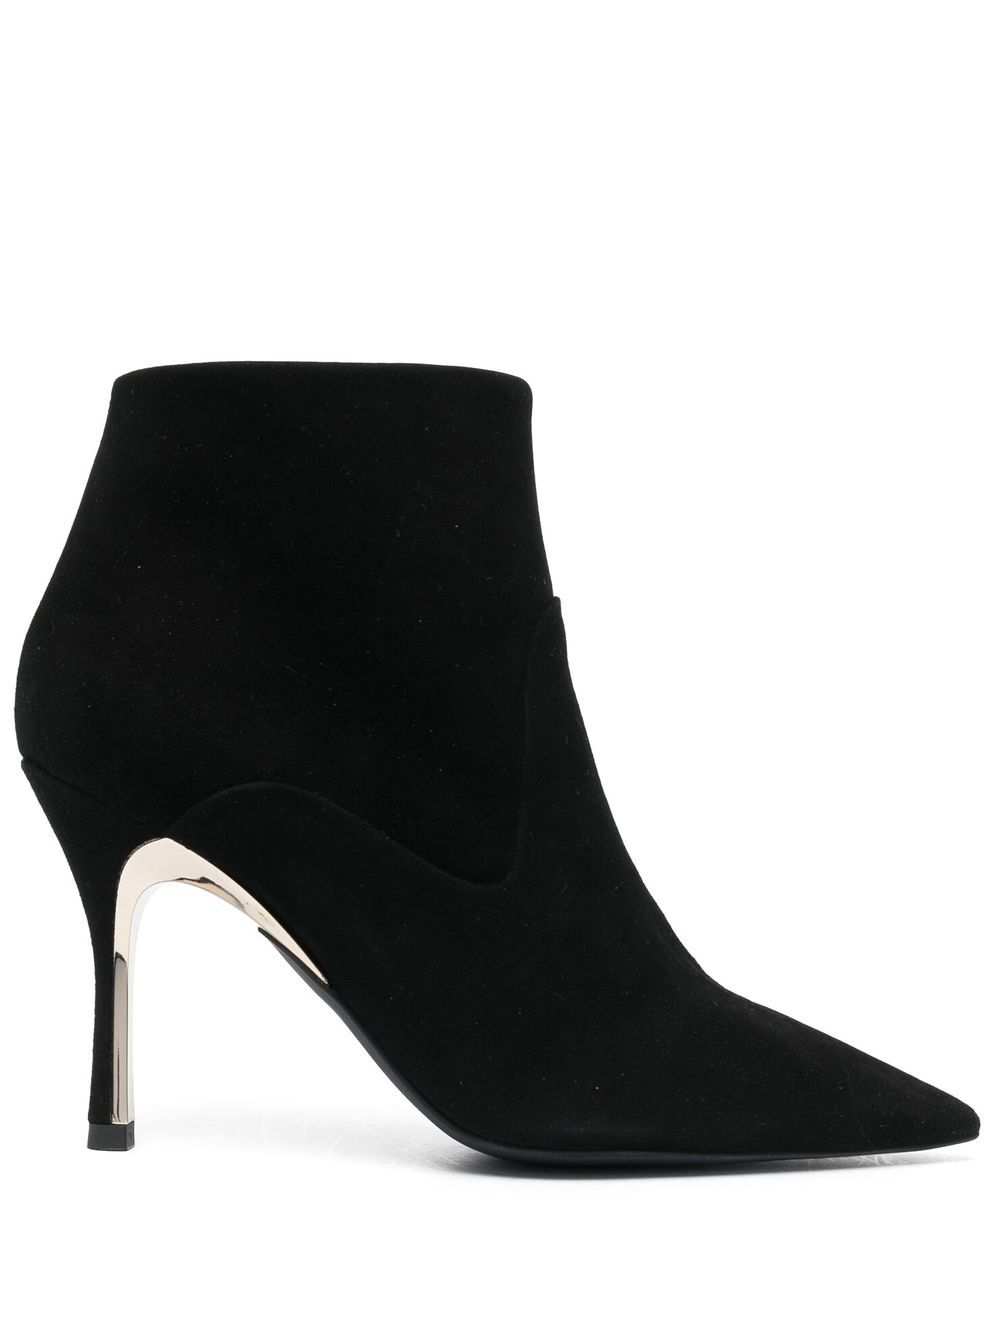 Furla pointed 90mm heeled boots - Black von Furla